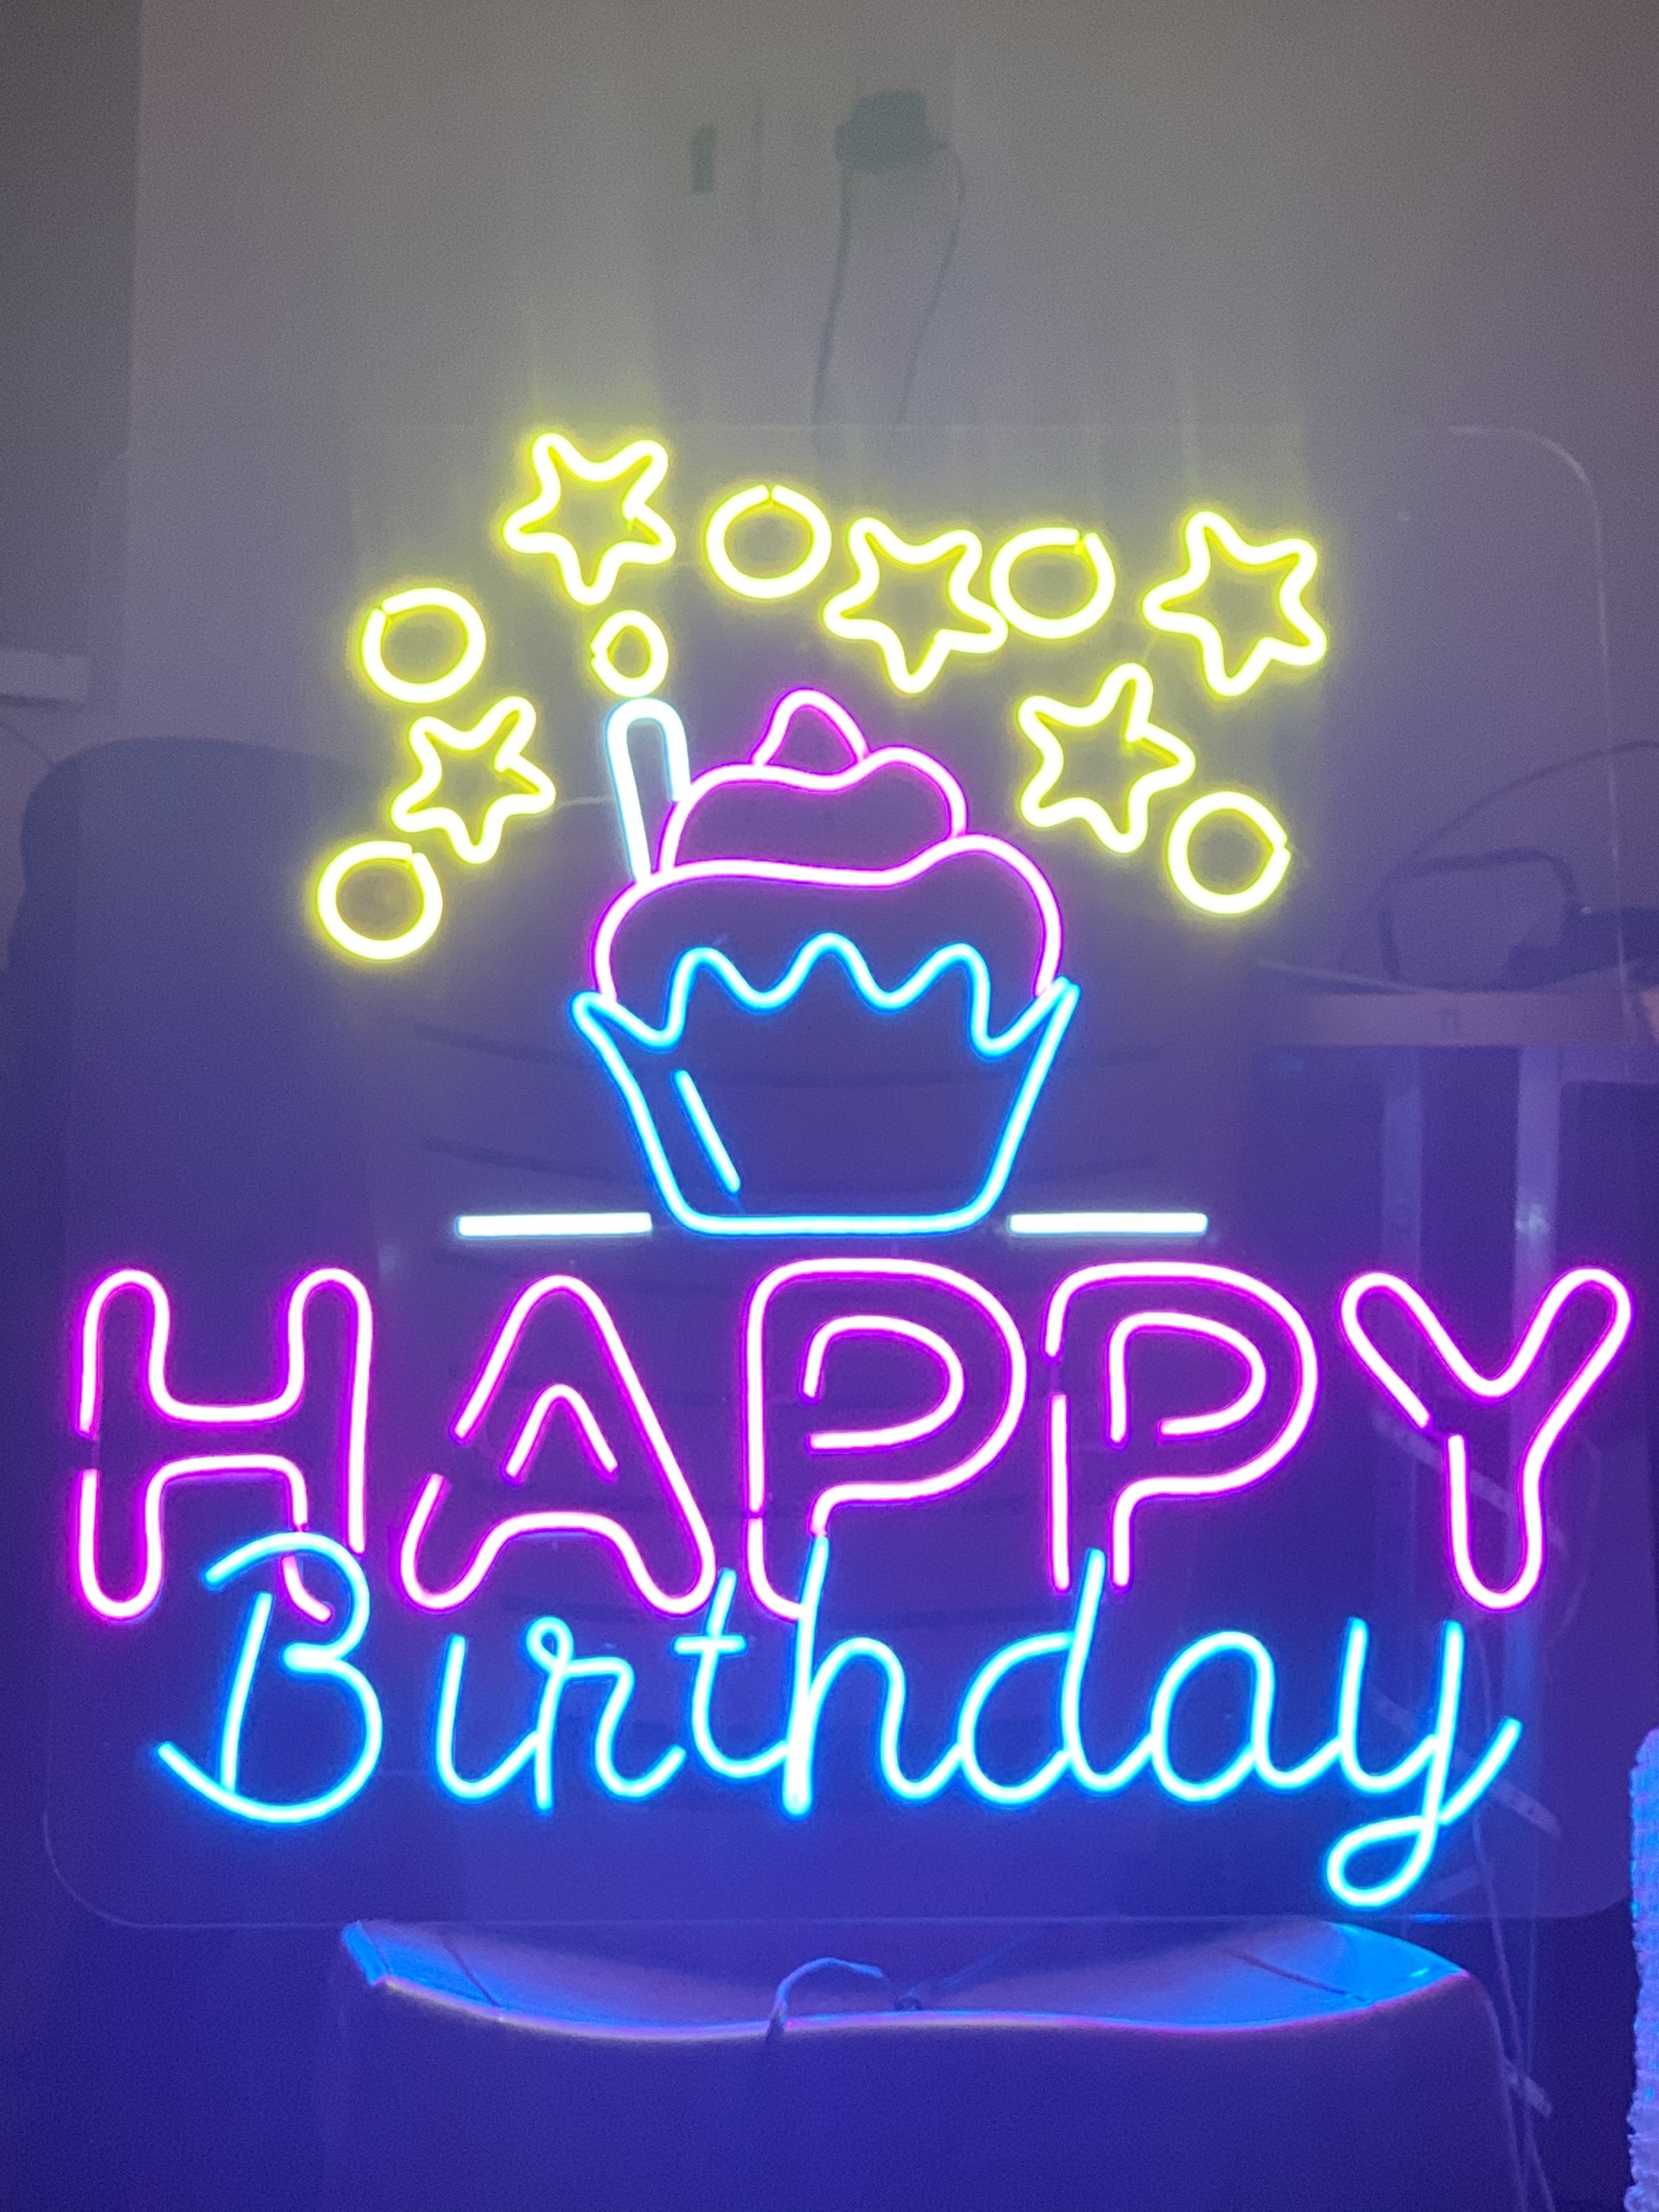 Hãy chào đón sinh nhật của người thân bằng đèn Neon Happy Birthday lung linh và đầy màu sắc! Sản phẩm được làm từ chất liệu an toàn và sáng tạo, giúp tạo nên không khí sinh nhật vui tươi và đầy phấn khởi. Click ngay để xem hình ảnh liên quan đến đèn Neon Happy Birthday.